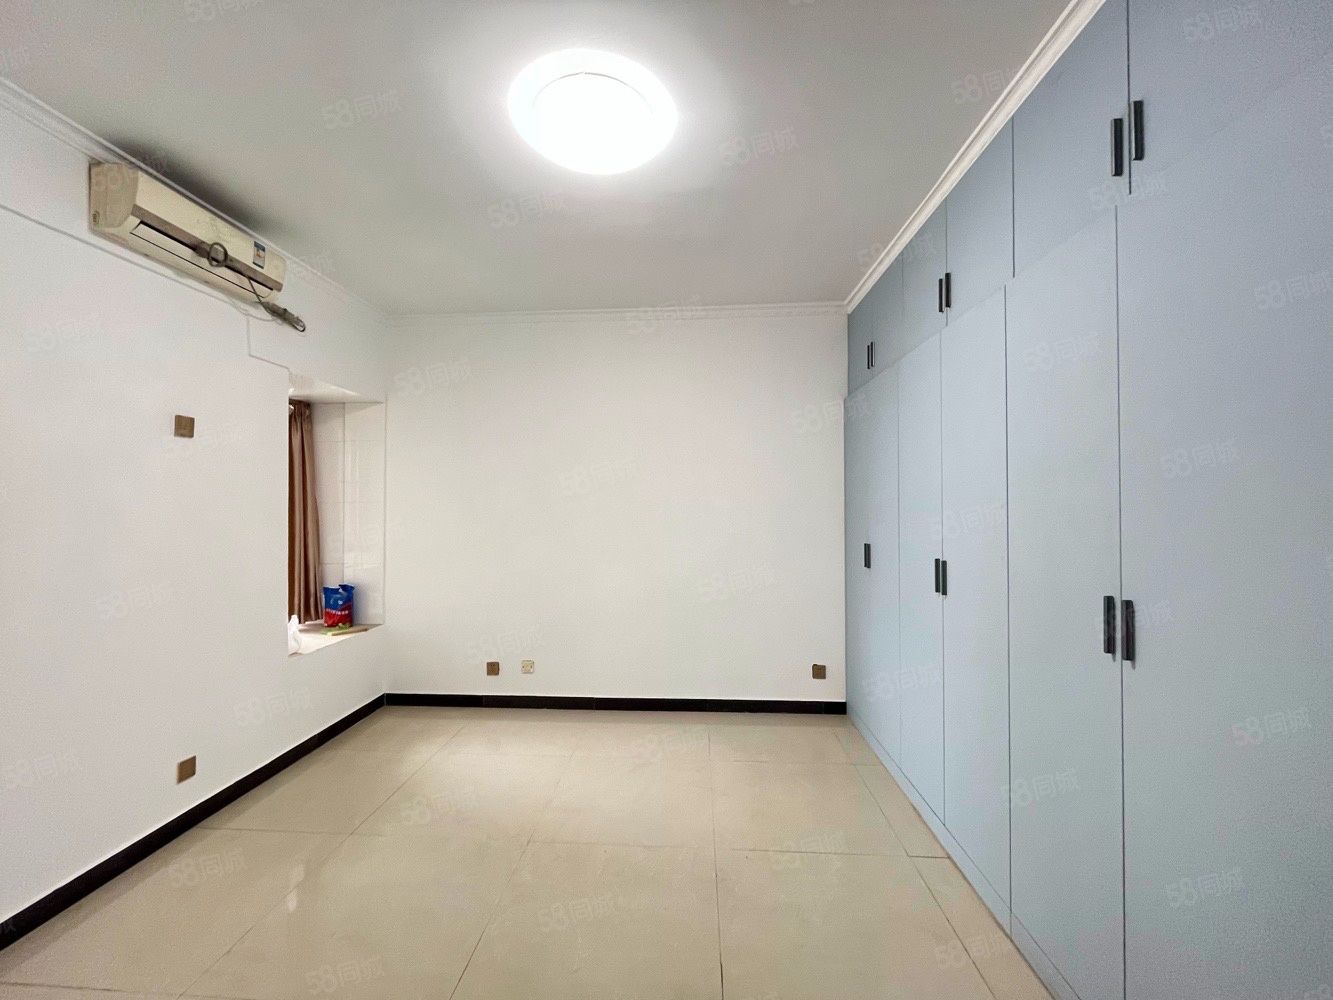 晶鑫丽座 长安广场 80平 电梯房 精装修 两室全配带空调